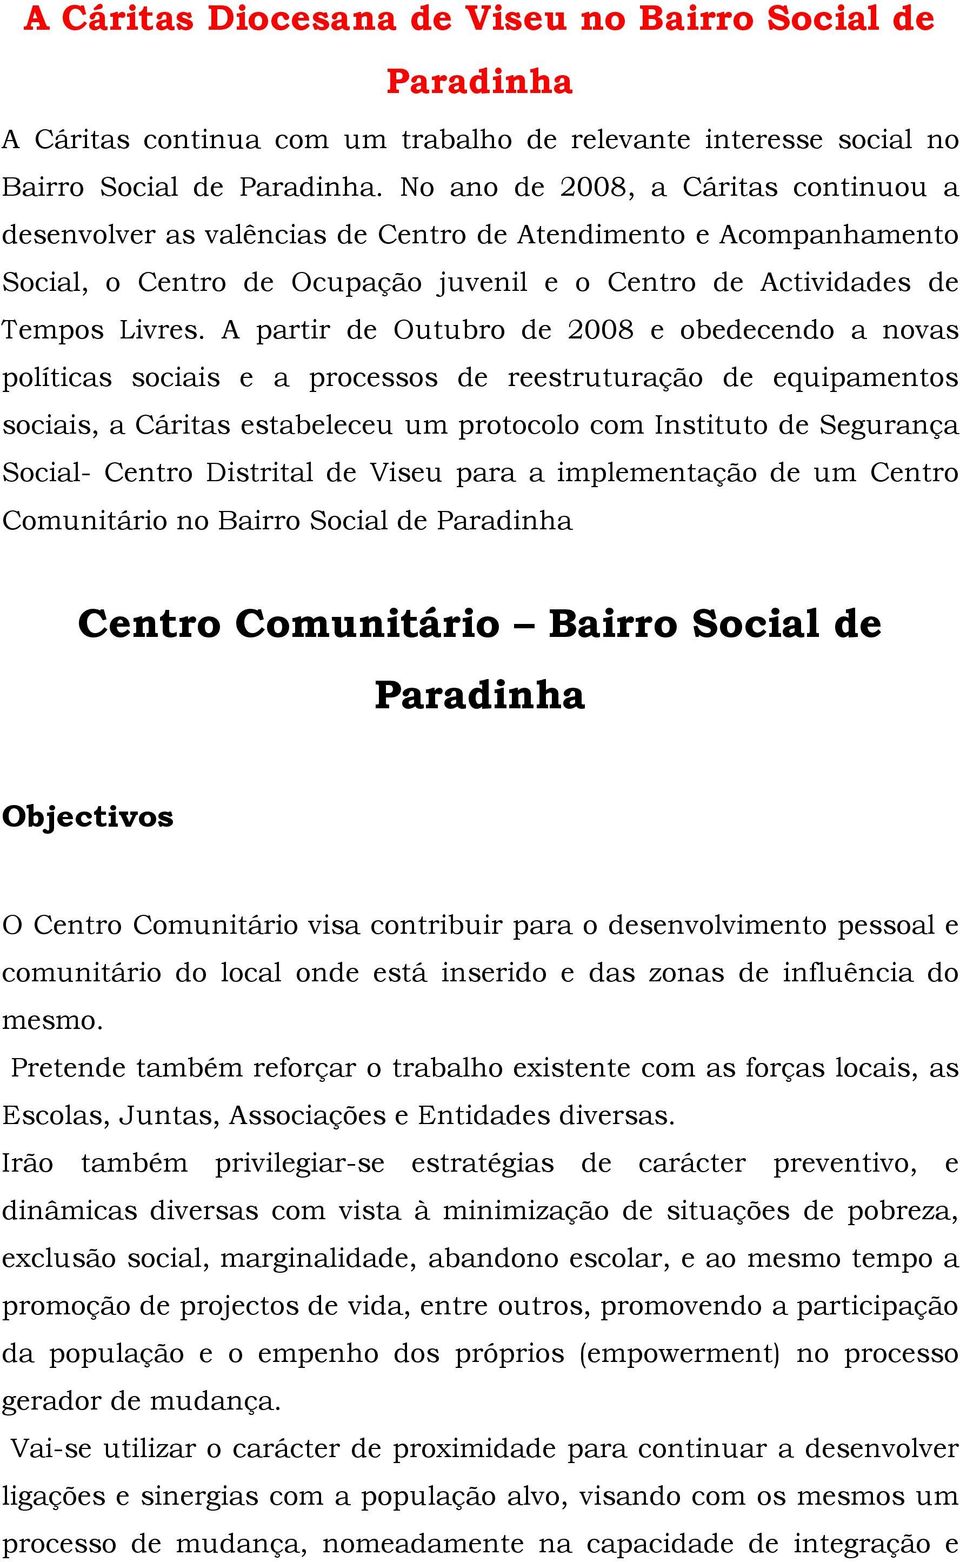 A partir de Outubro de 2008 e obedecendo a novas políticas sociais e a processos de reestruturação de equipamentos sociais, a Cáritas estabeleceu um protocolo com Instituto de Segurança Social-